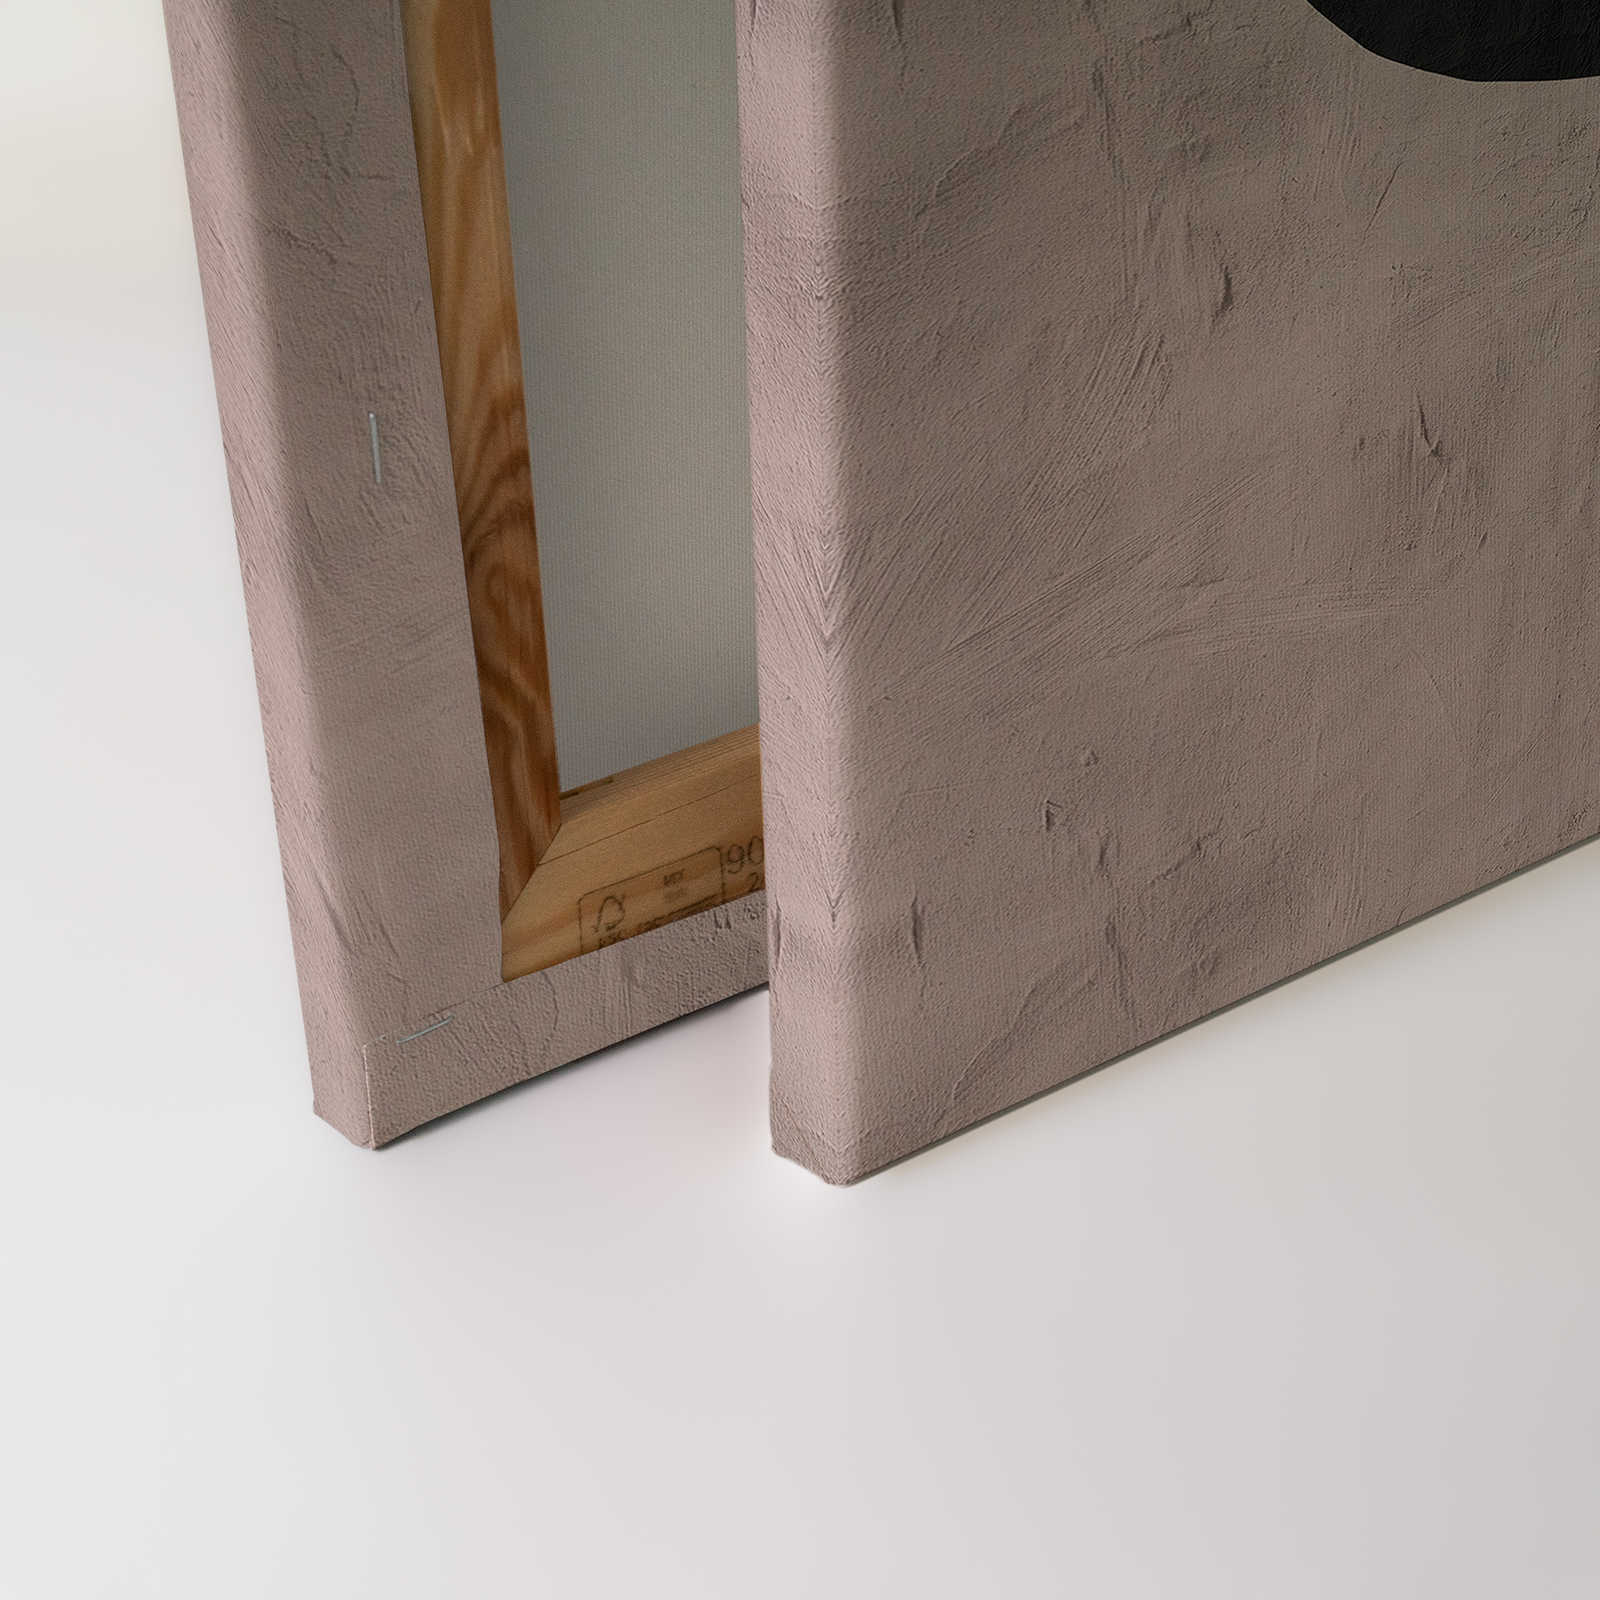             Santa Fe 2 - Lehmwand Leinwandbild mit Colour Block Design – 1,20 m x 0,80 m
        